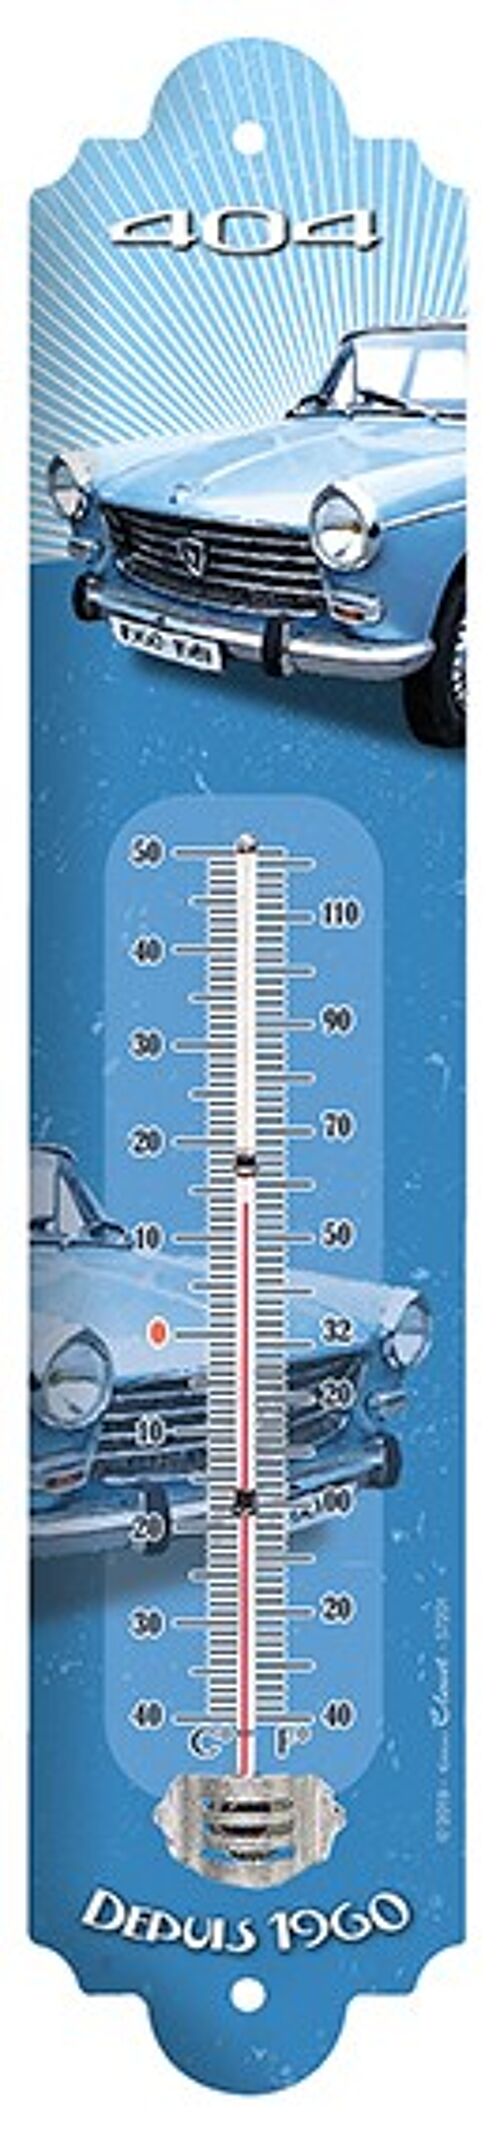 Thermomètre Vintage 404 peugeot thermometre